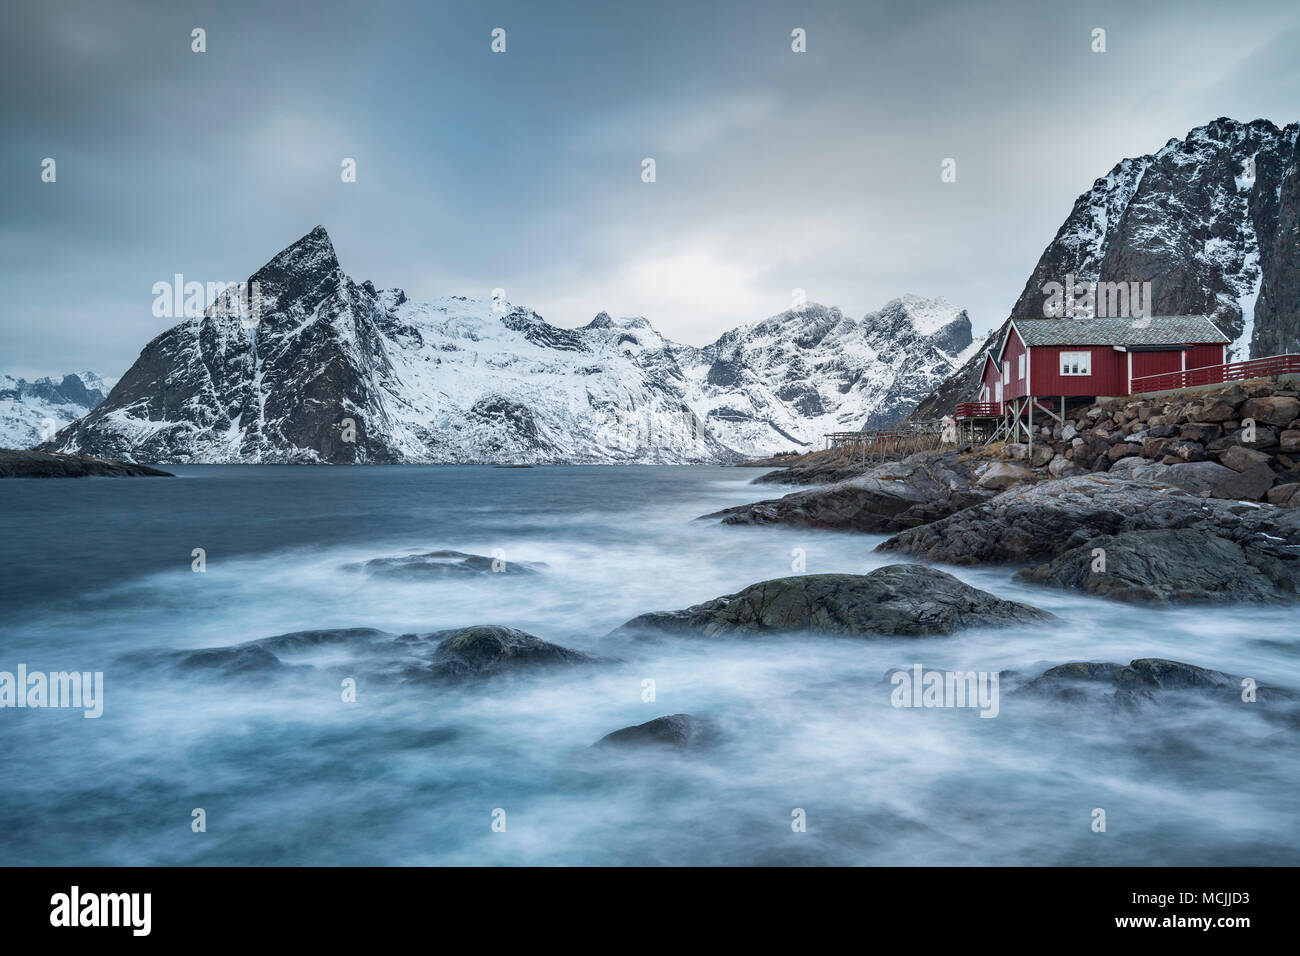 Fishermen's houses, Rorbuer or Rorbu, Moskenesoya, Reine, Hamnoy Lofoten, Norway Stock Photo